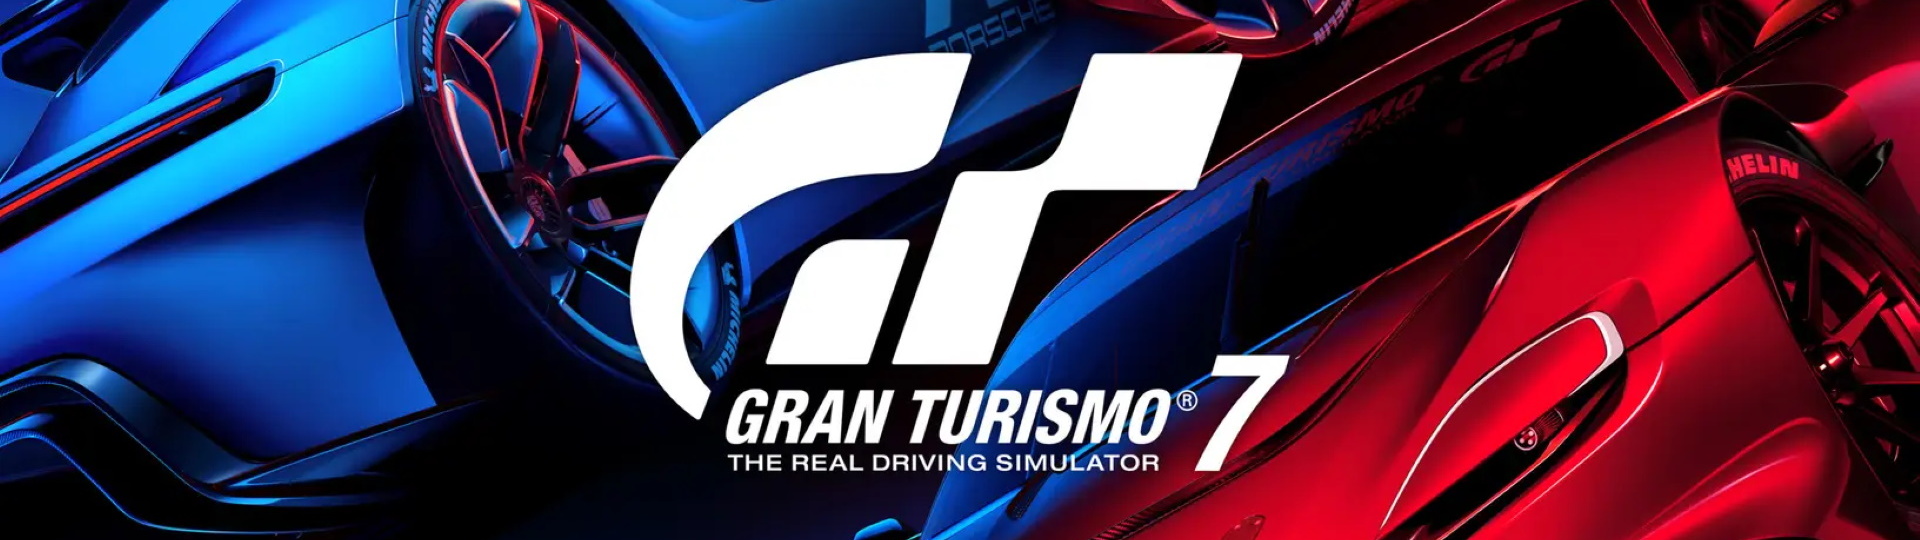 Startují předobjednávky Gran Turismo 7 | Novinky